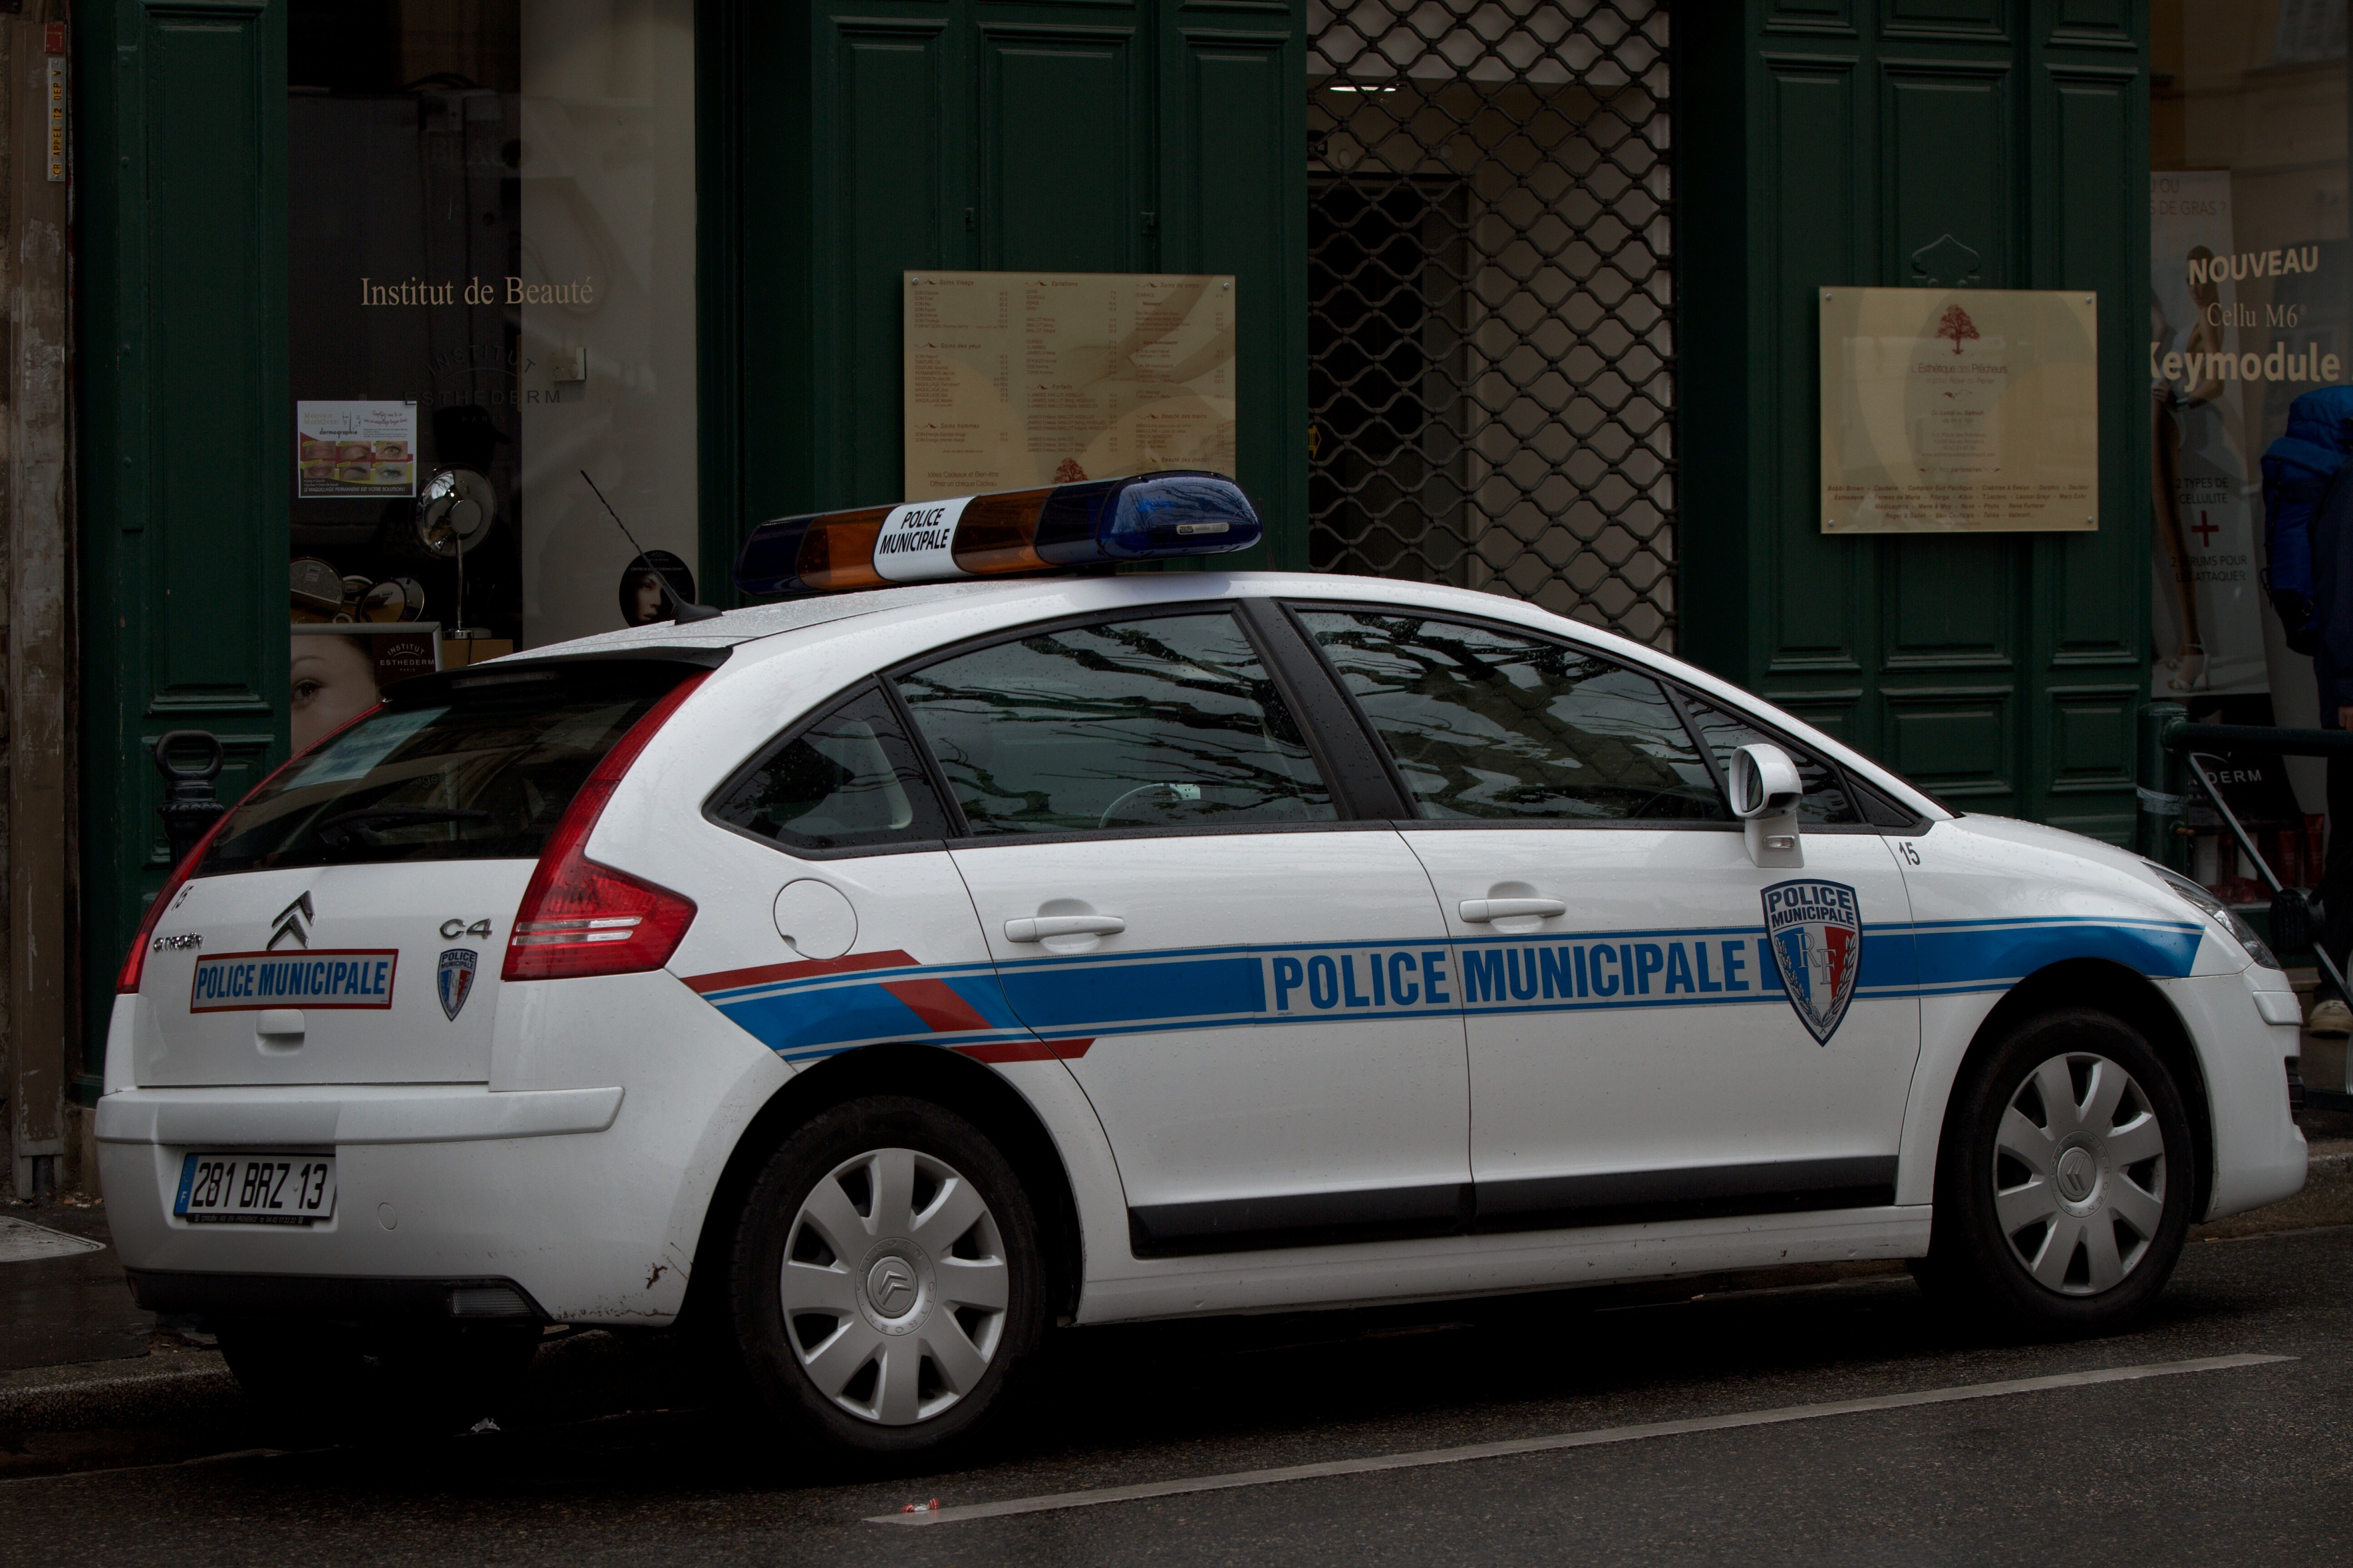 Police municipale 20100508 Aix-en-Provence 1